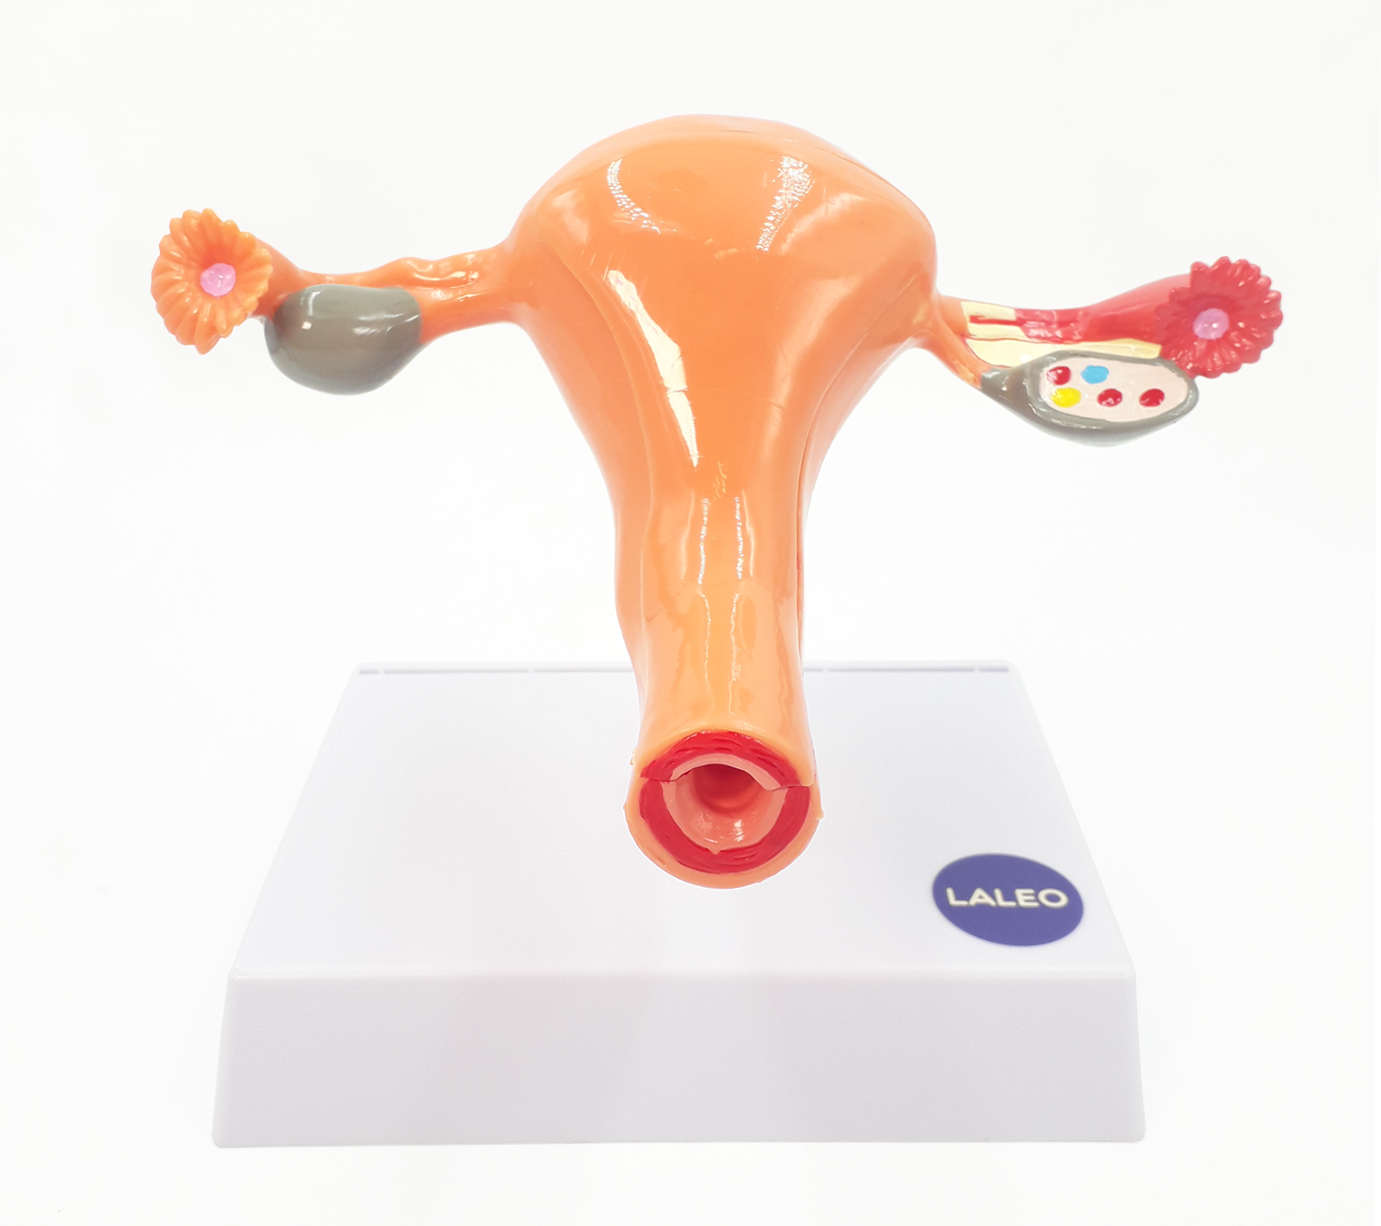 Modelo anatómico de útero femenino y ovario en LALEO